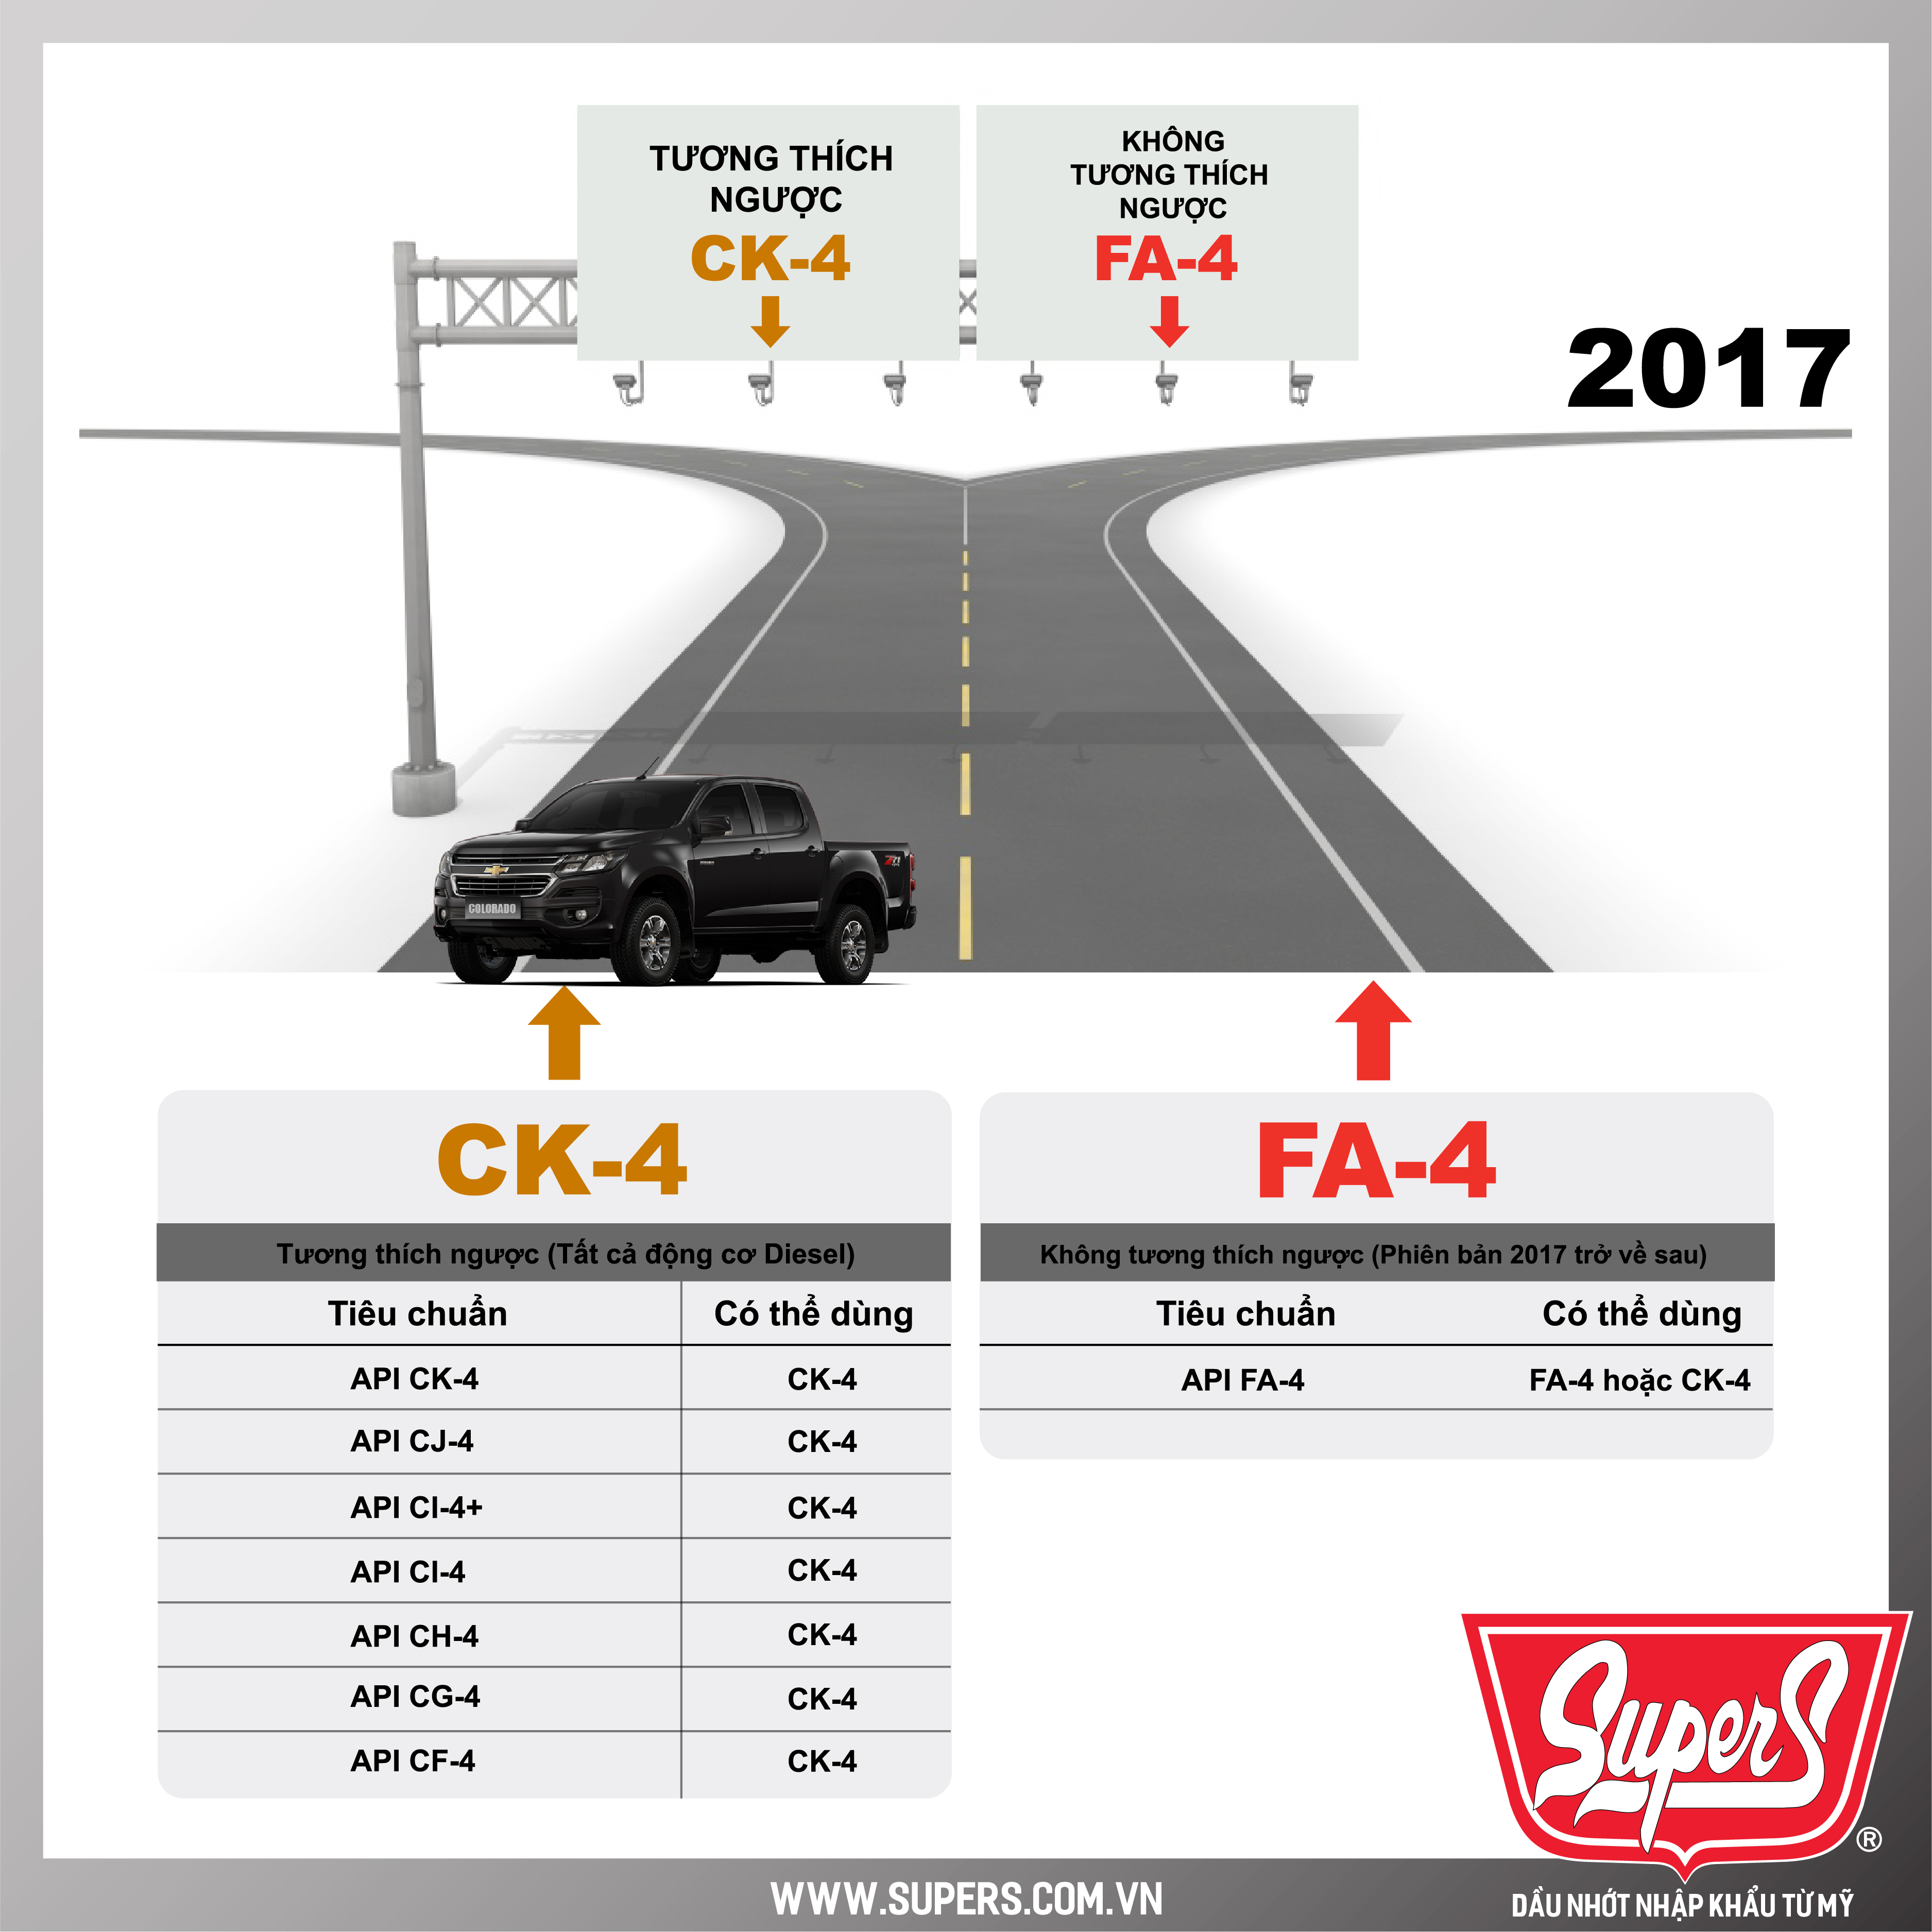 Dầu nhớt CK-4 tương thích ngược với các tiêu chuẩn đã ra đời trước đó như CJ-4, CI-4+, CI-4, CH-4,...